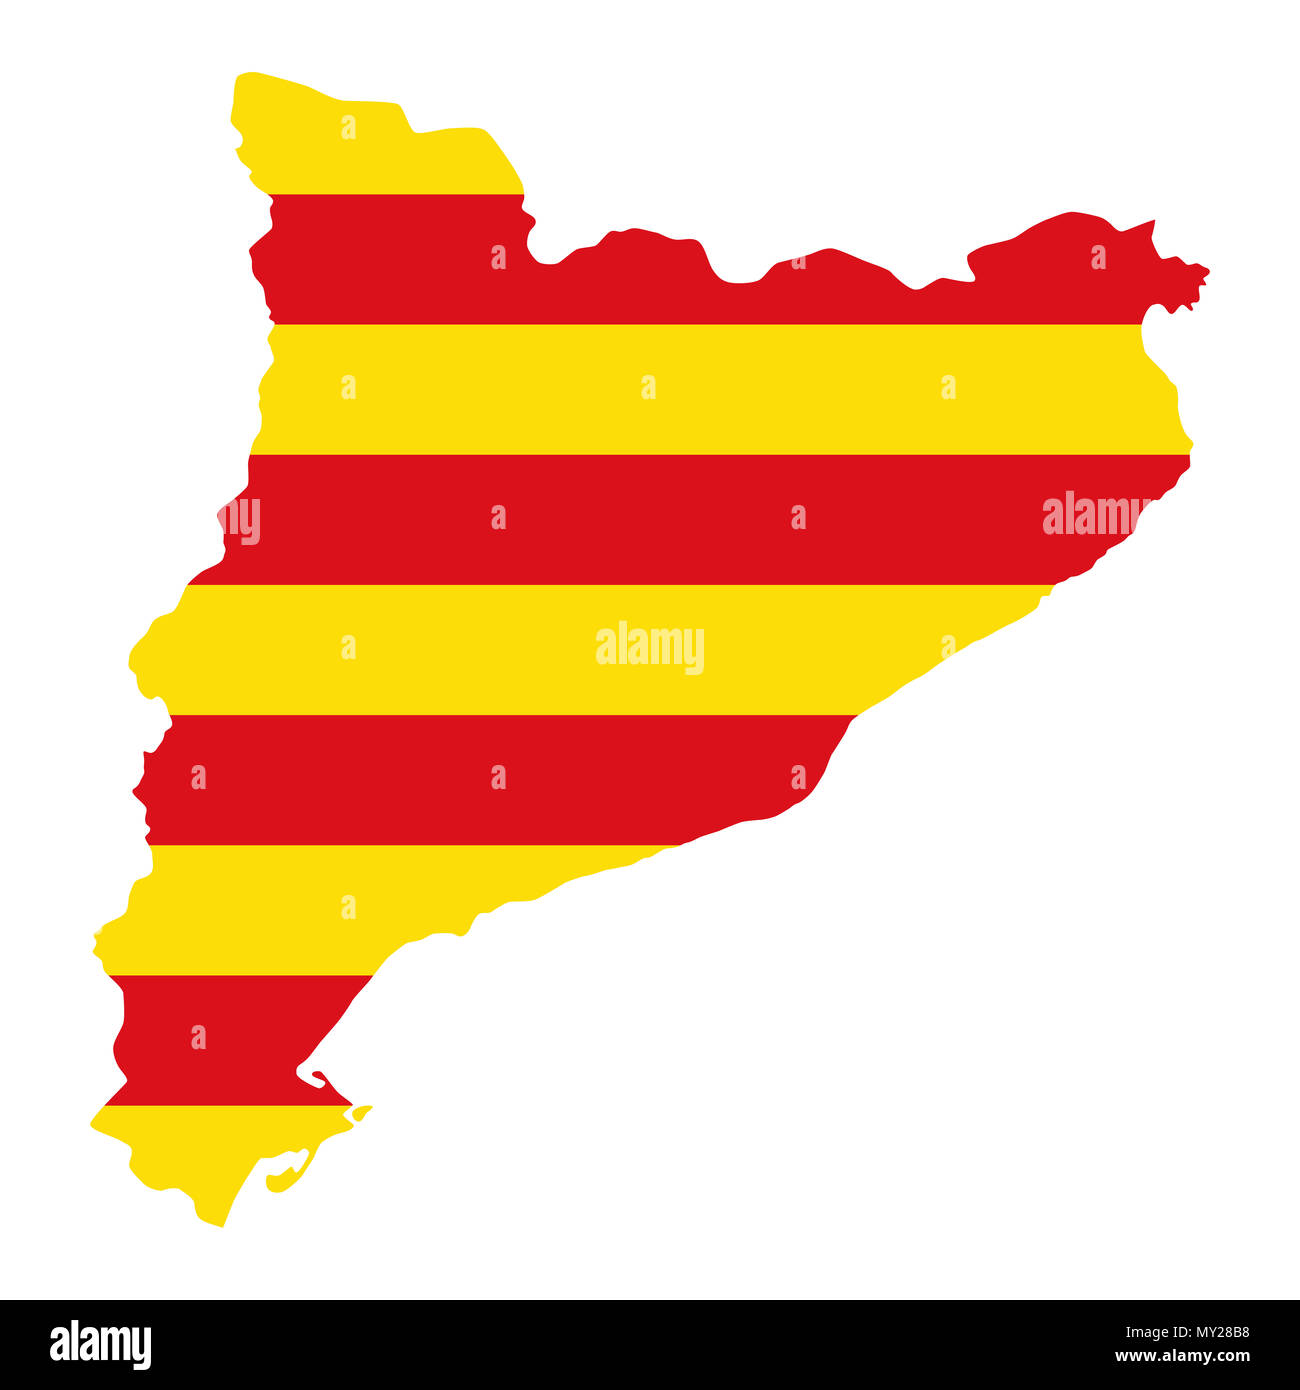 Drapeau de la Catalogne en pays d'ossature. Senyera, jaune et rouge bandes horizontales, dans le plan général de la communauté autonome en Espagne. Banque D'Images